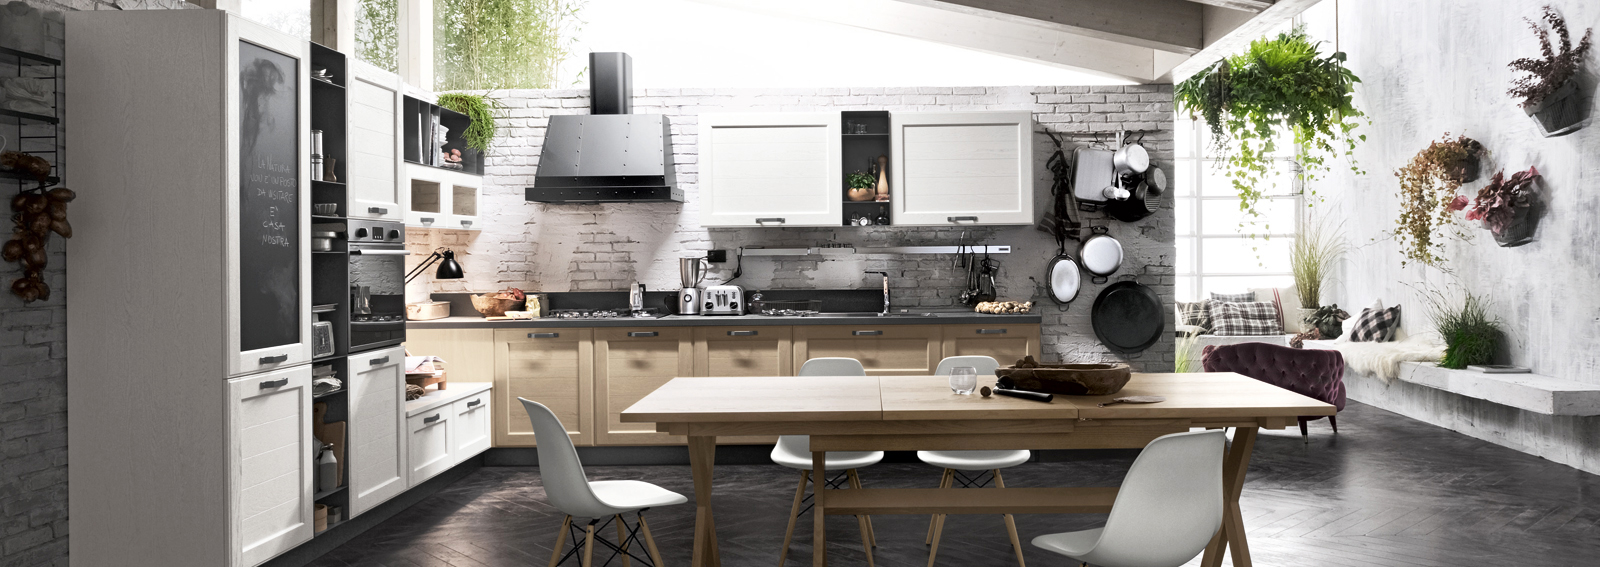 Le cucine pi belle viste al salone del mobile 2016 for Cucine design 2016